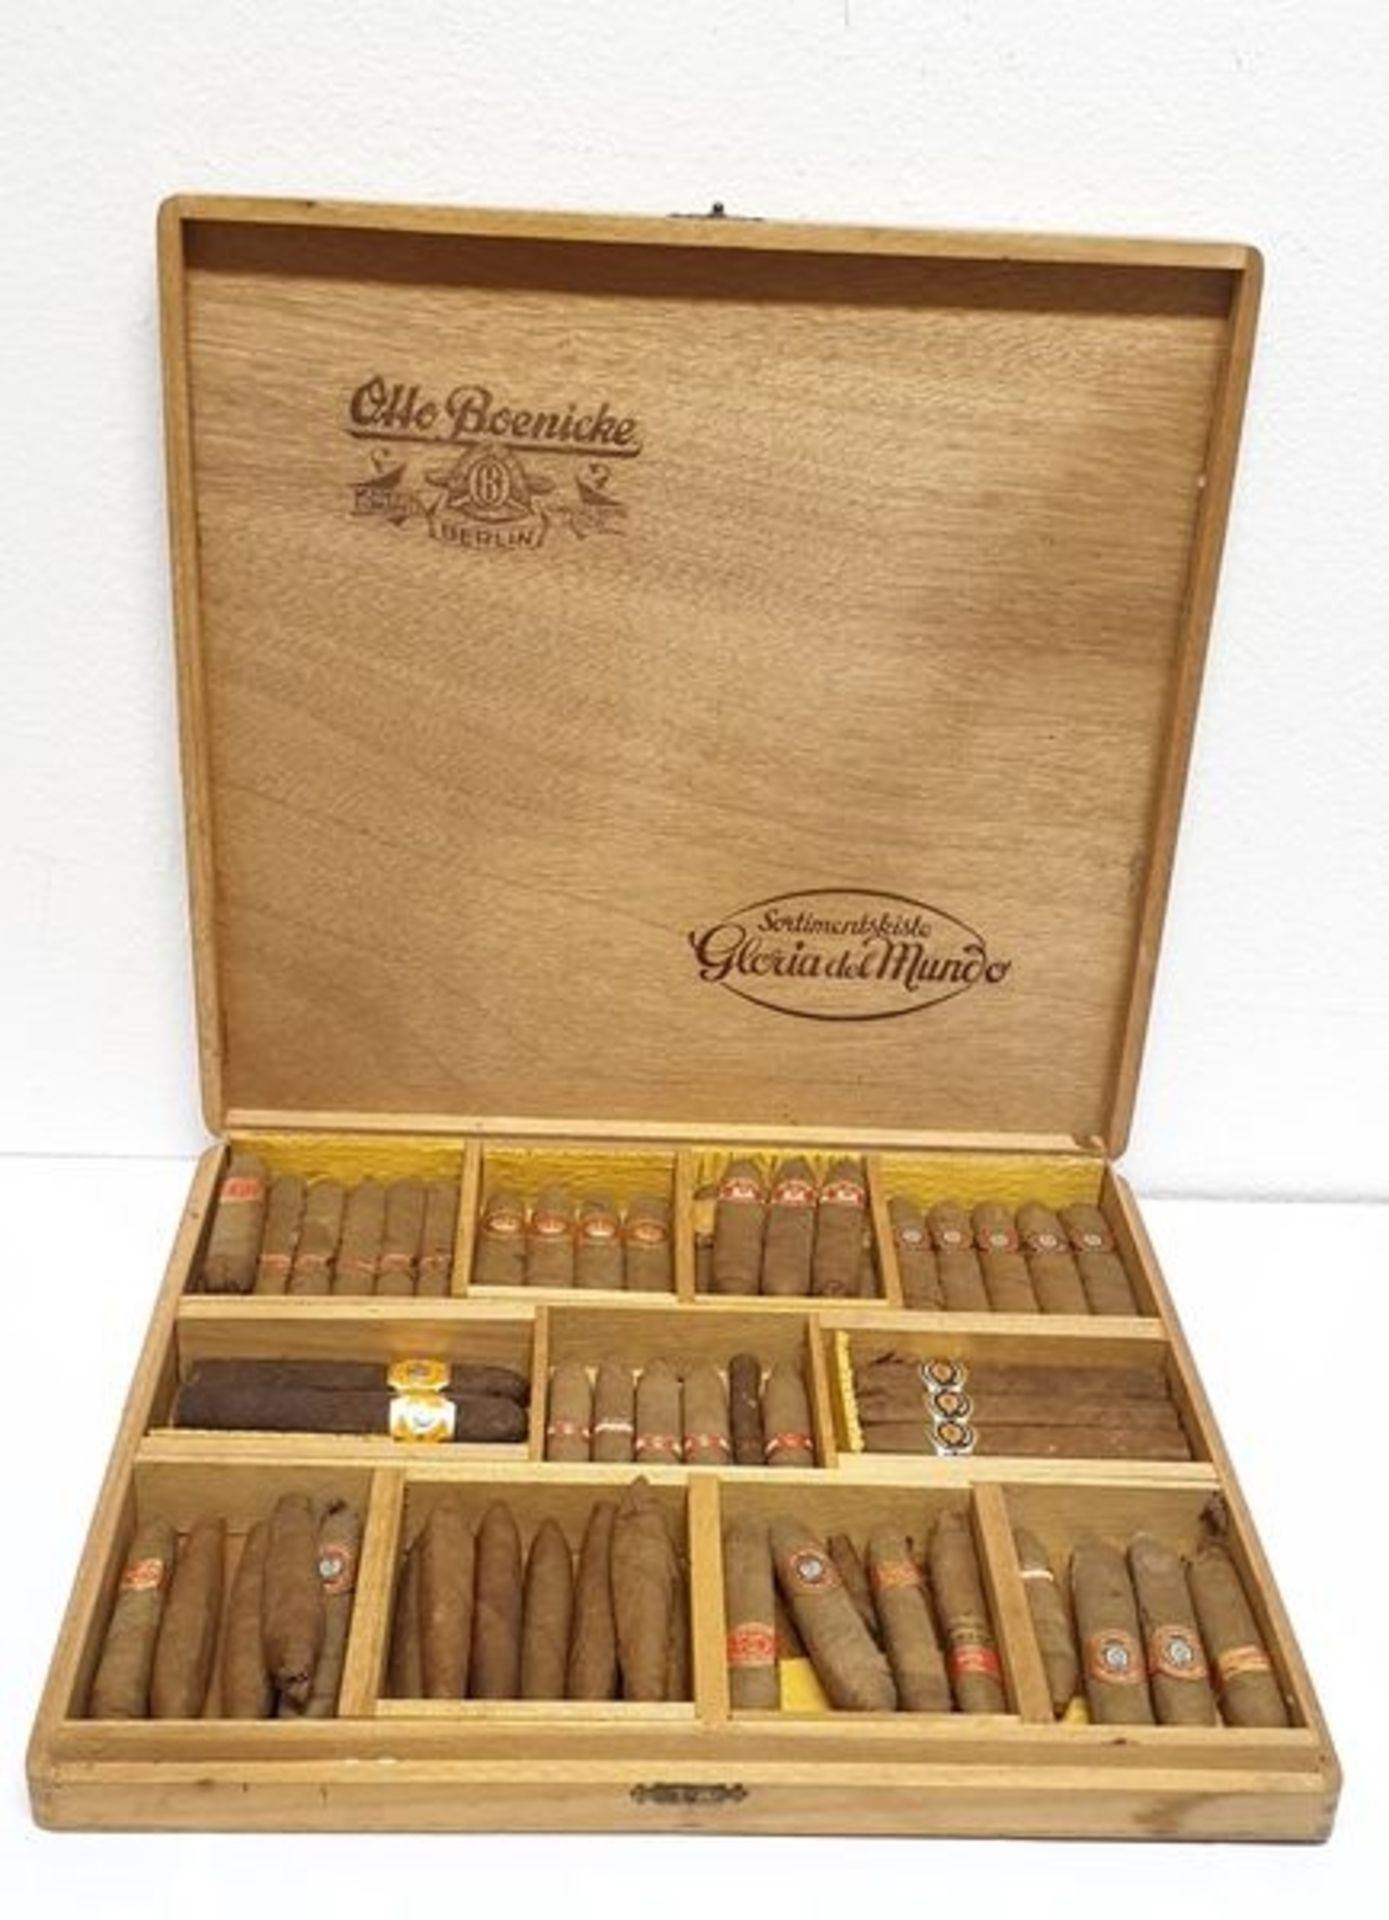 Zigarrenkiste von Otto Boenicke , 40/50er Jahre , gefüllt mit 57 Stück Zigarren, Größe Kiste: